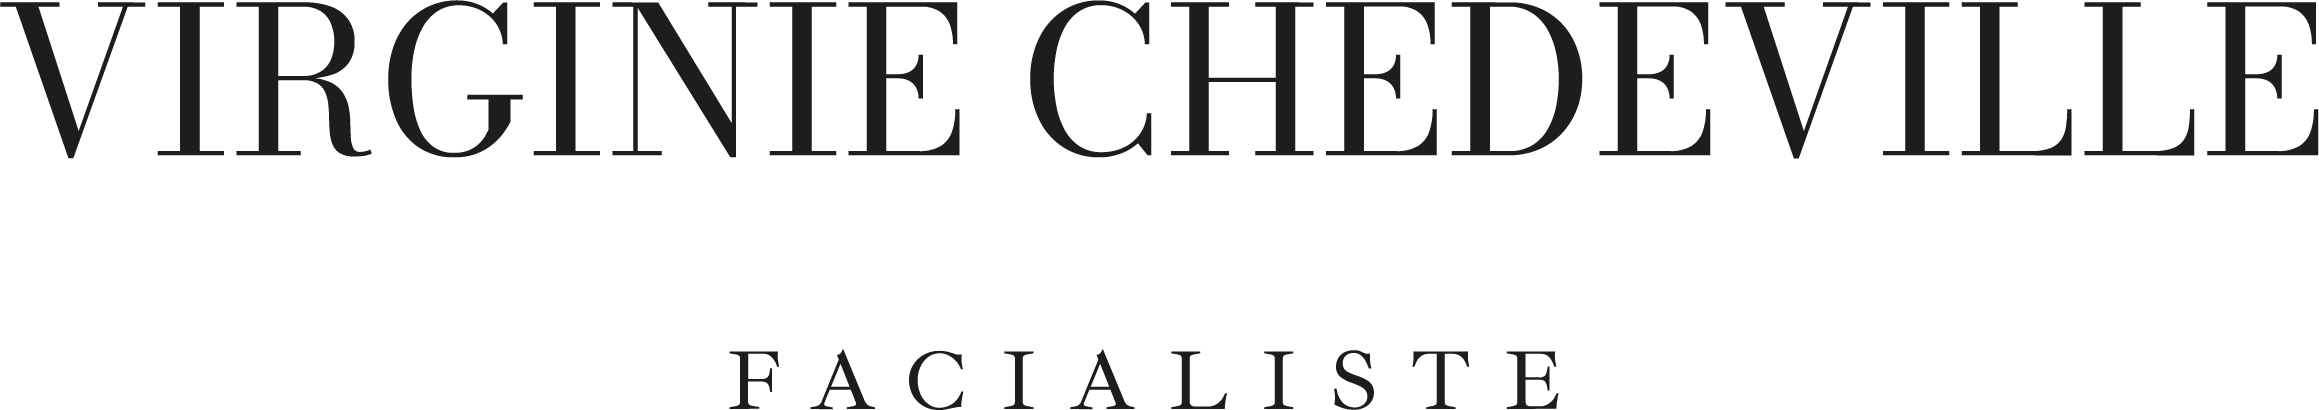 VIRGINIE CHEDEVILLE logo